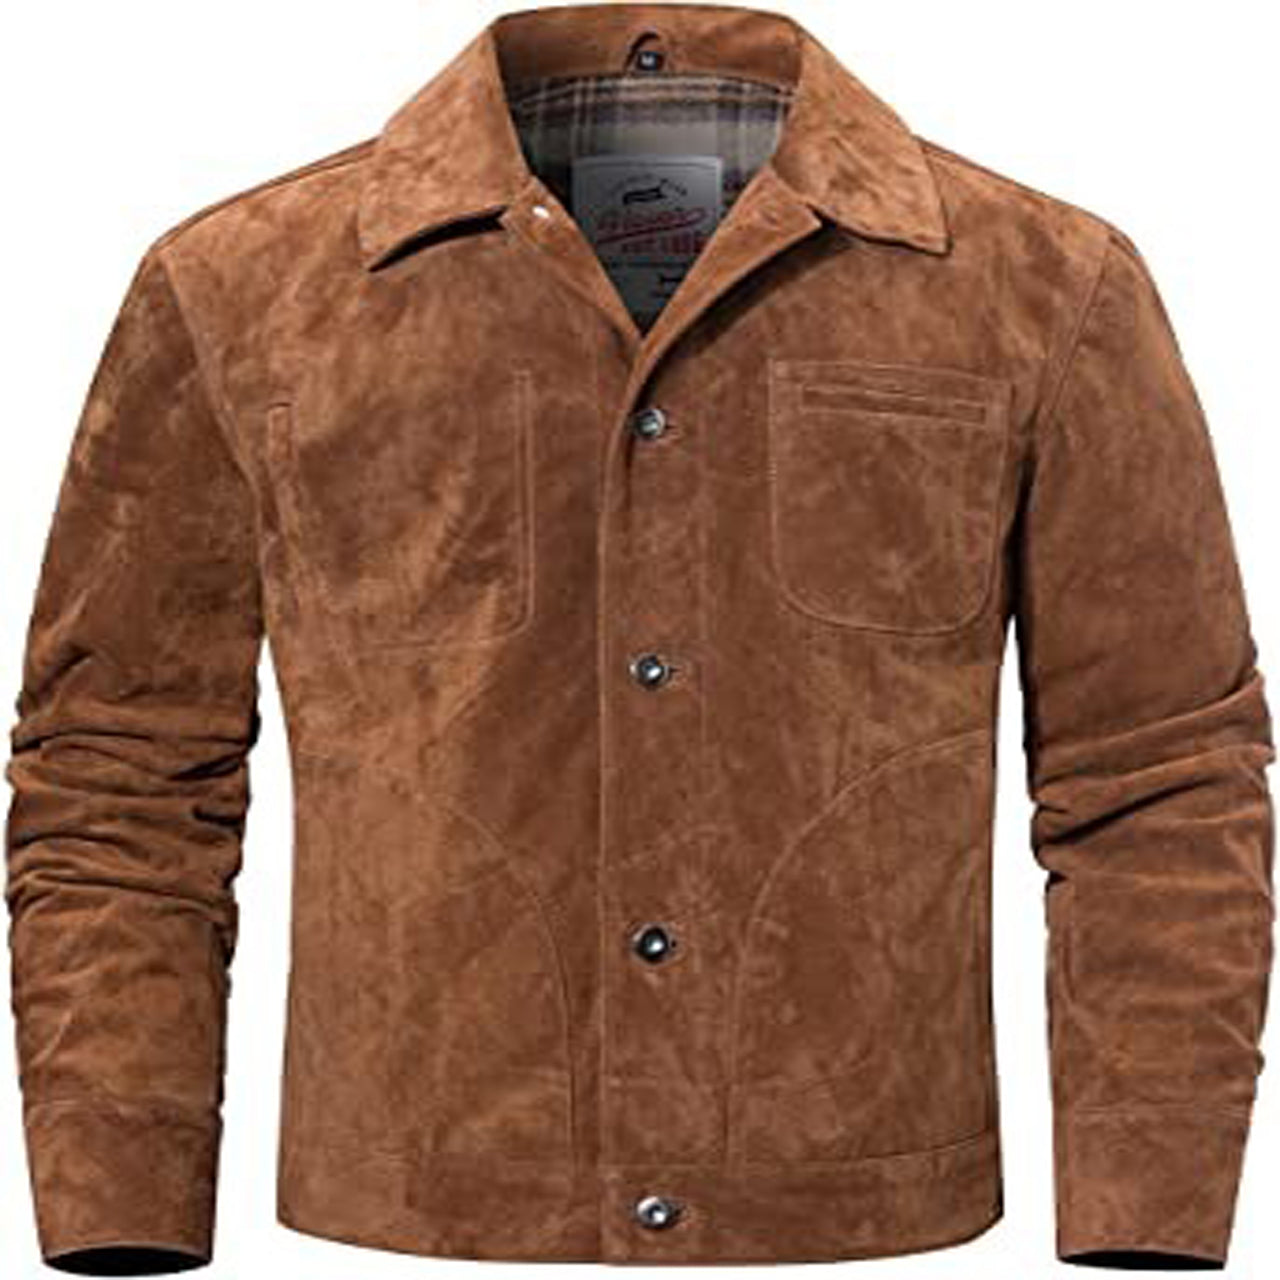 Men's Suede Leather Jacket Trucker Coat